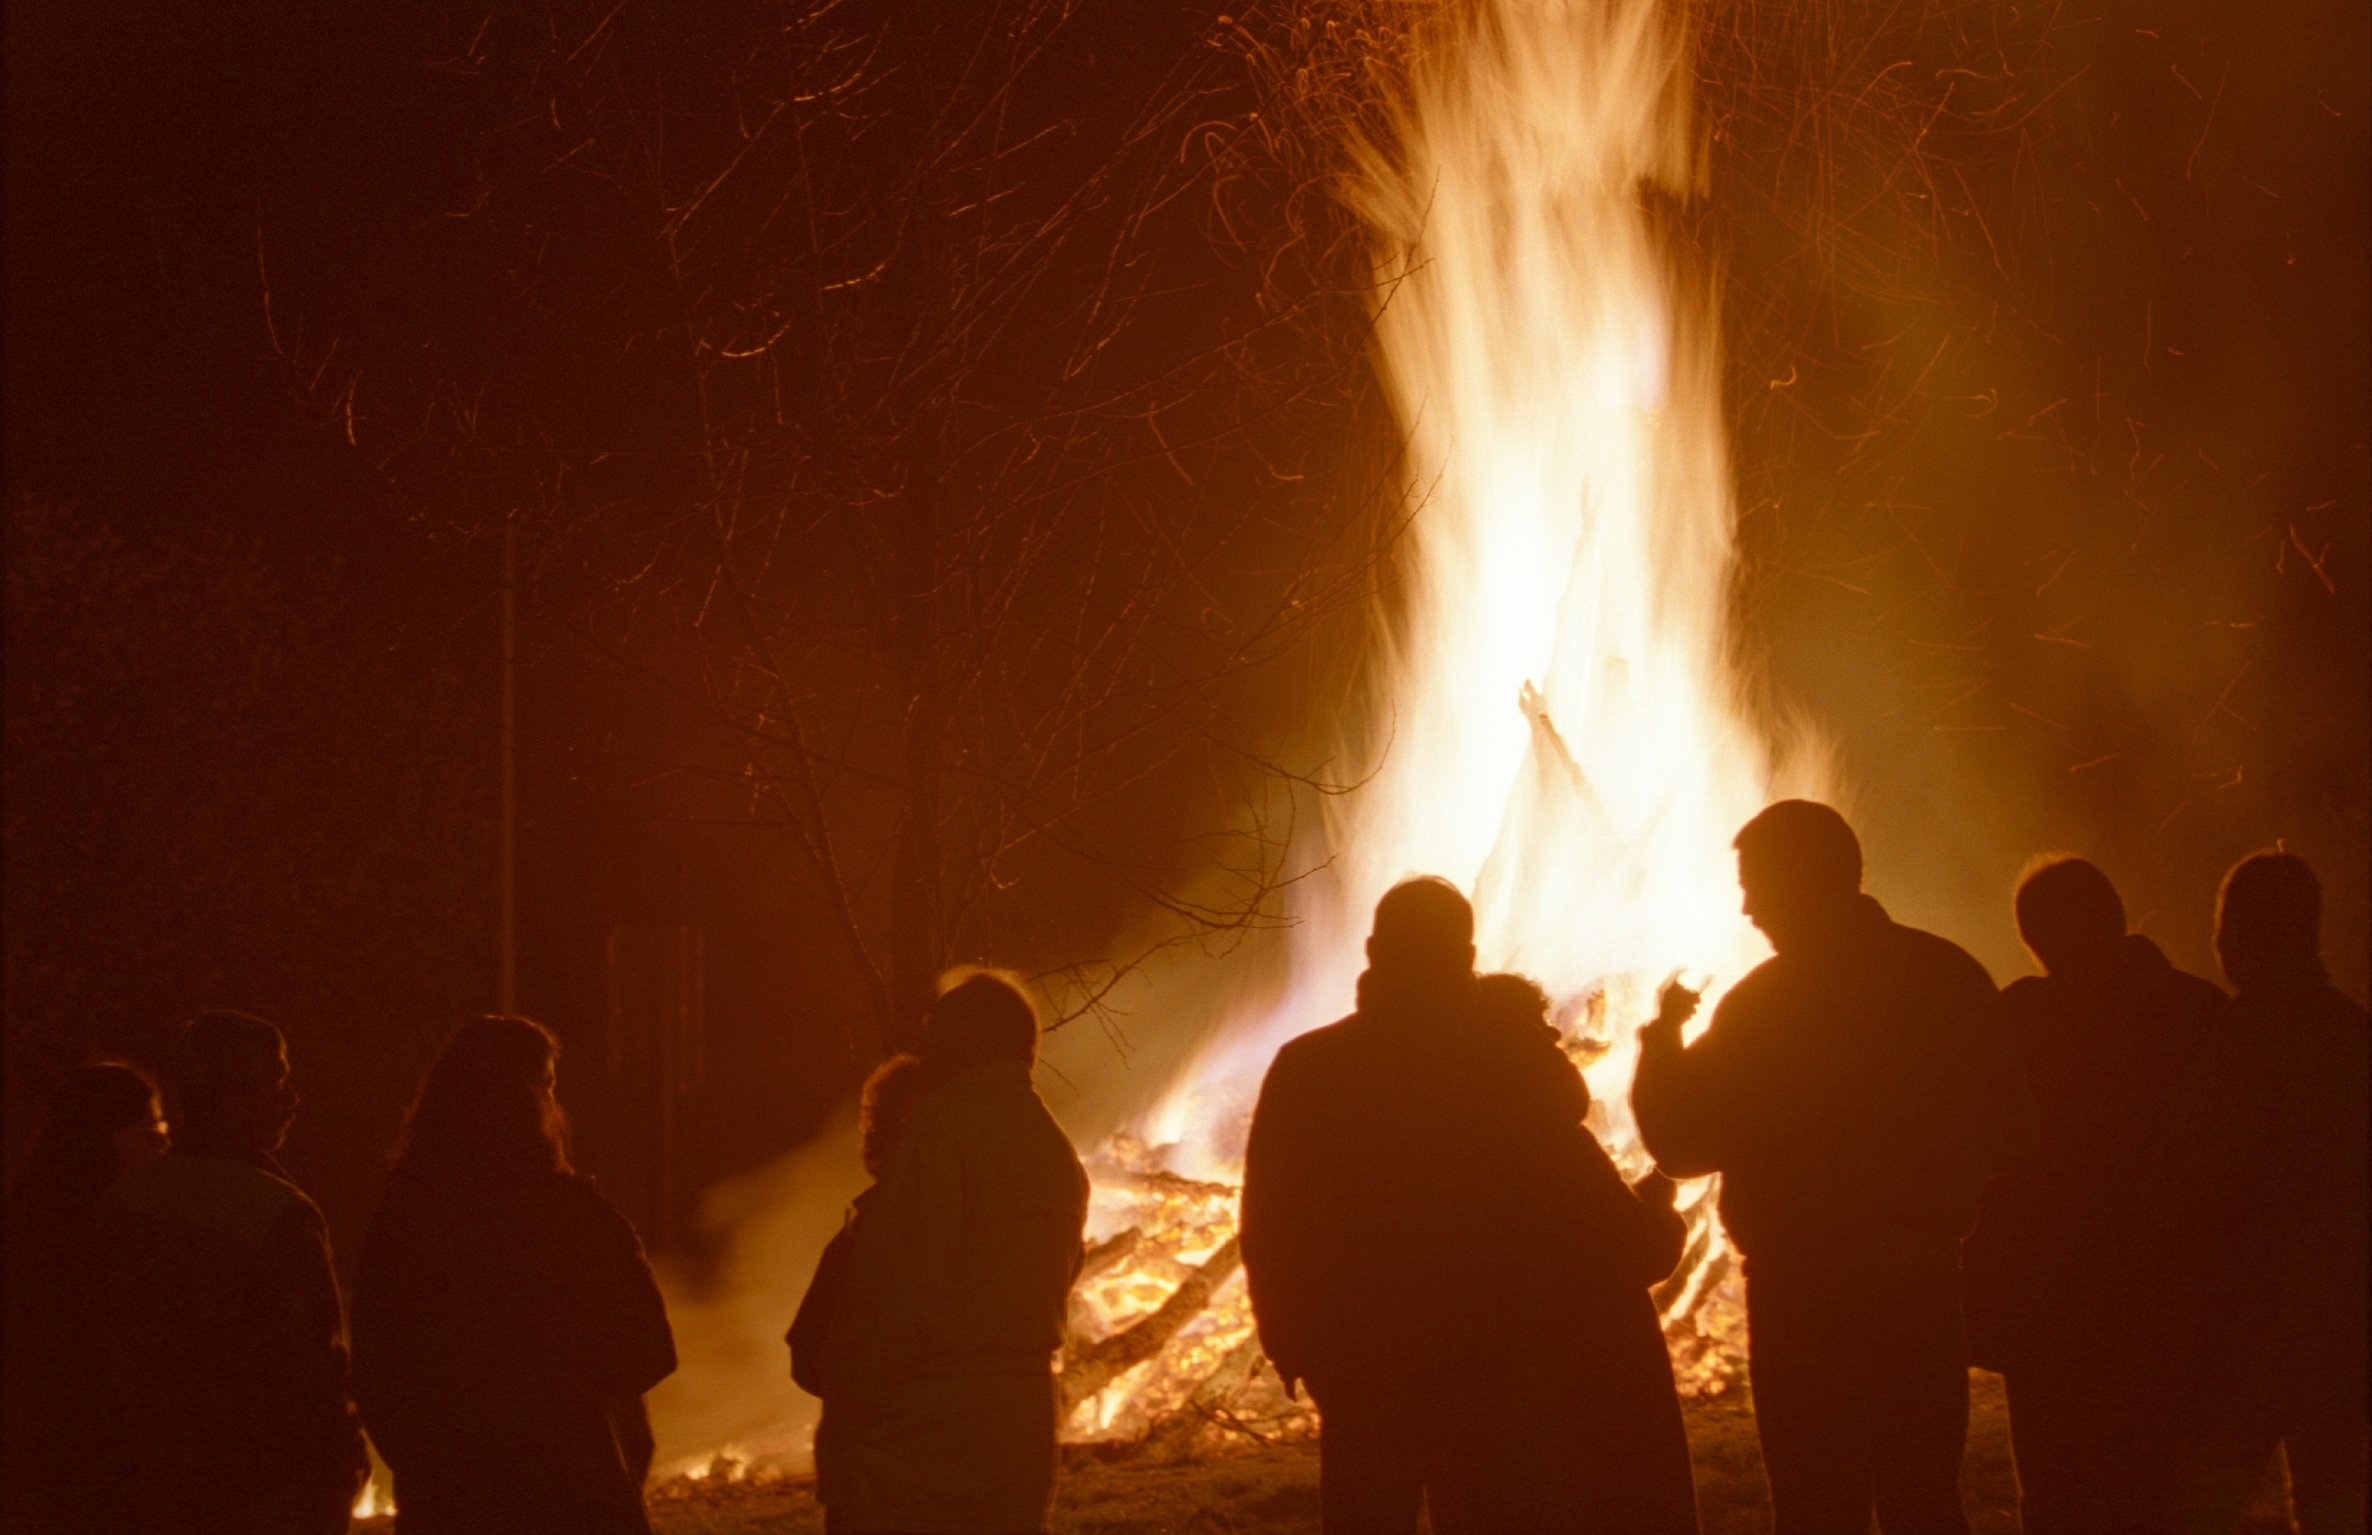 Osterfeuer haben auch im Emsland eine lange Tradition.
Foto: Symbolbild